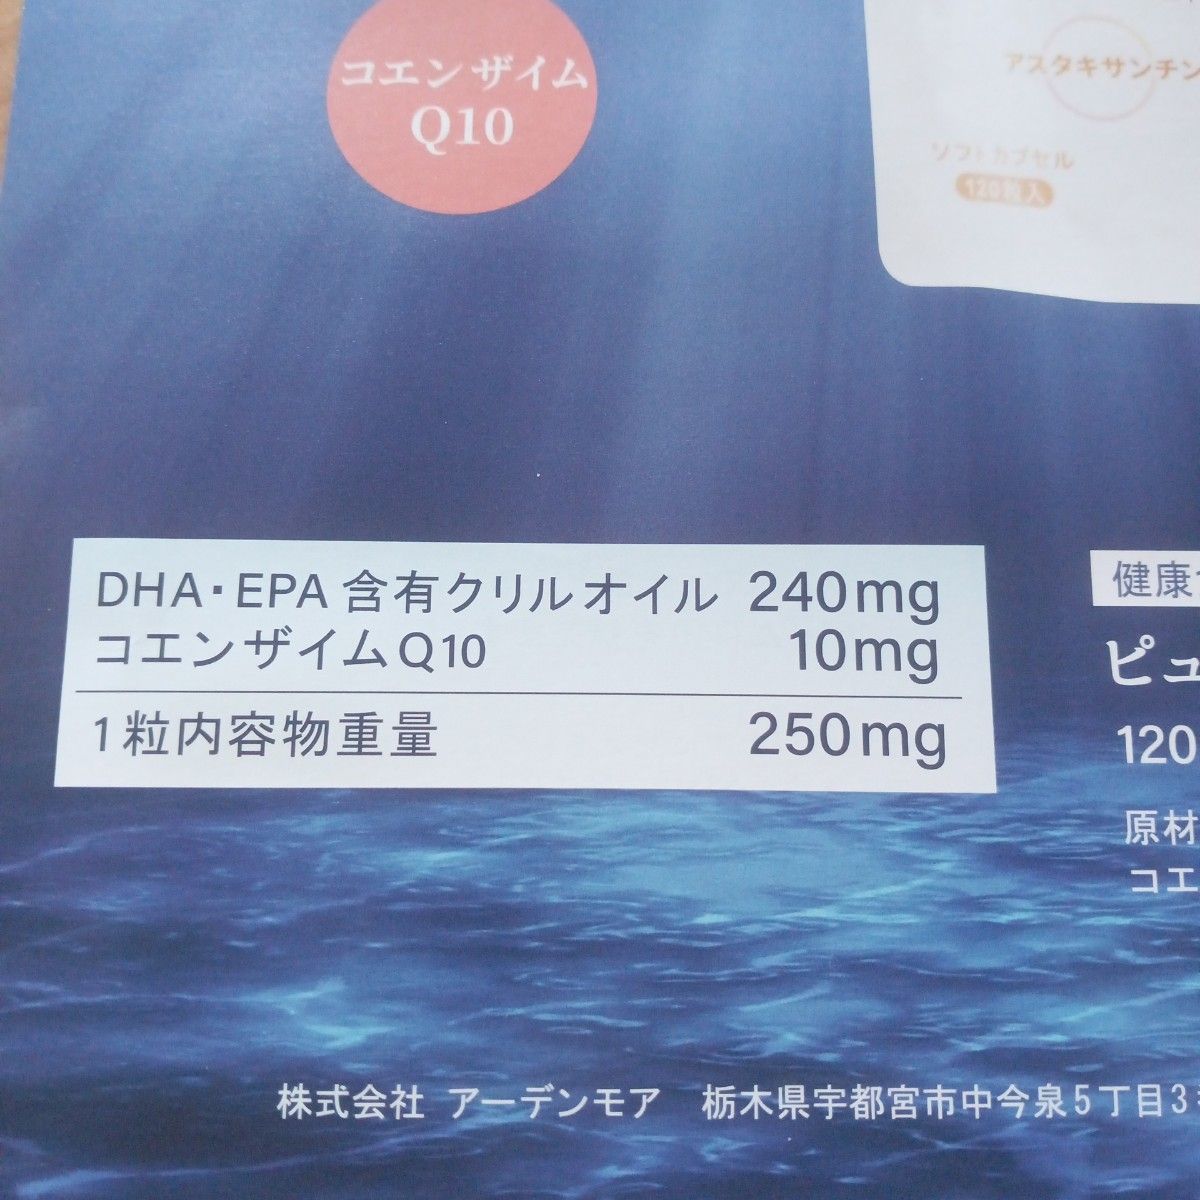 ピュアクリルオイルリンDHAEPA120粒+24粒増量コエンザイムQ10